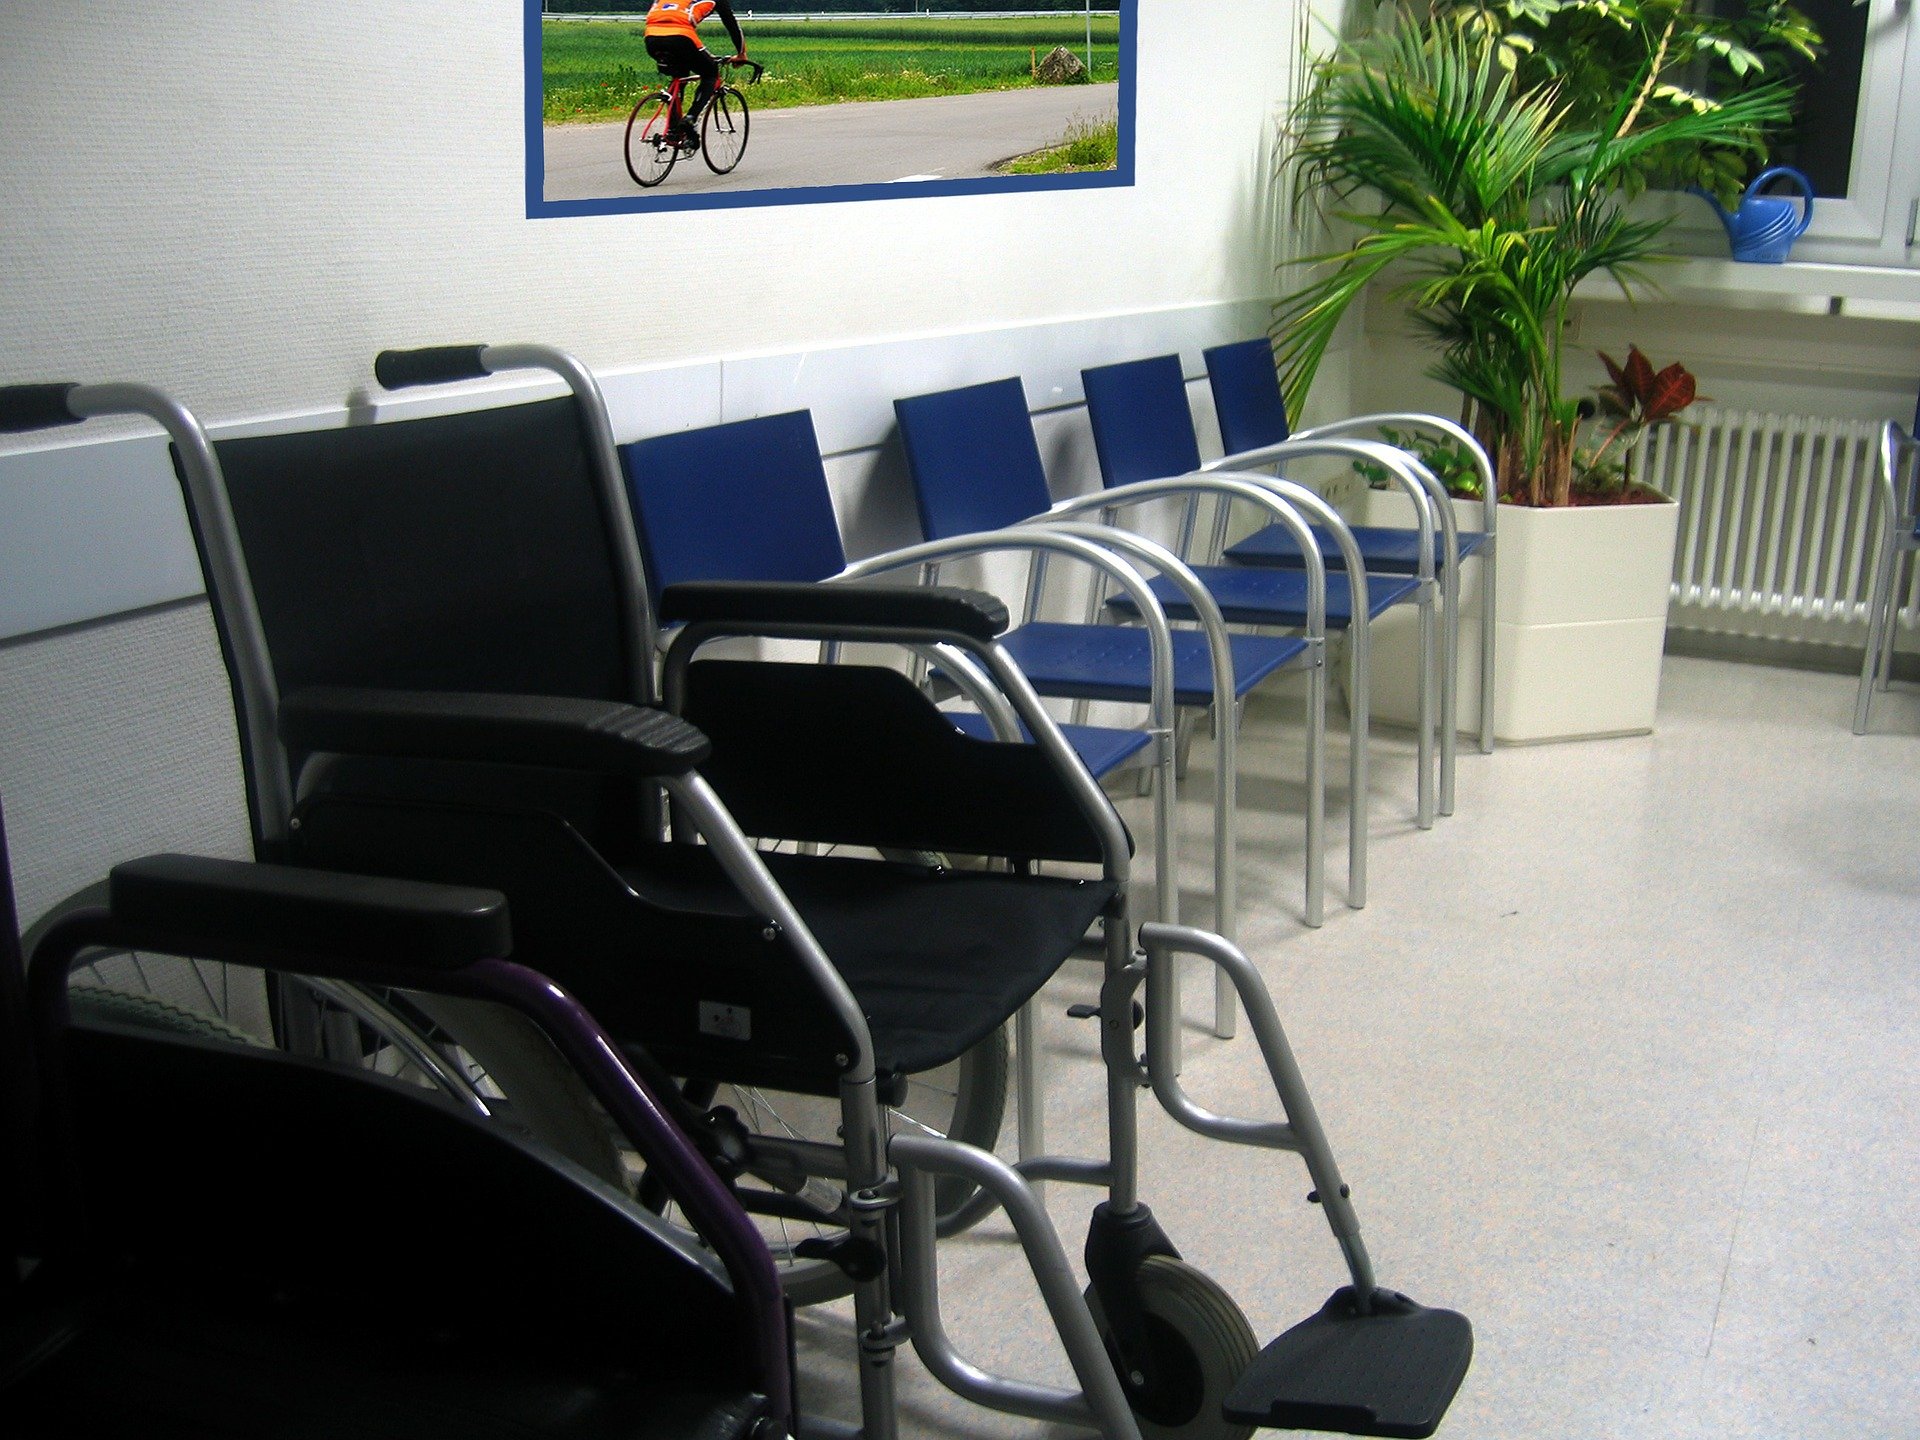 Une salle d'attente dans un hôpital. | Photo : Pixabay